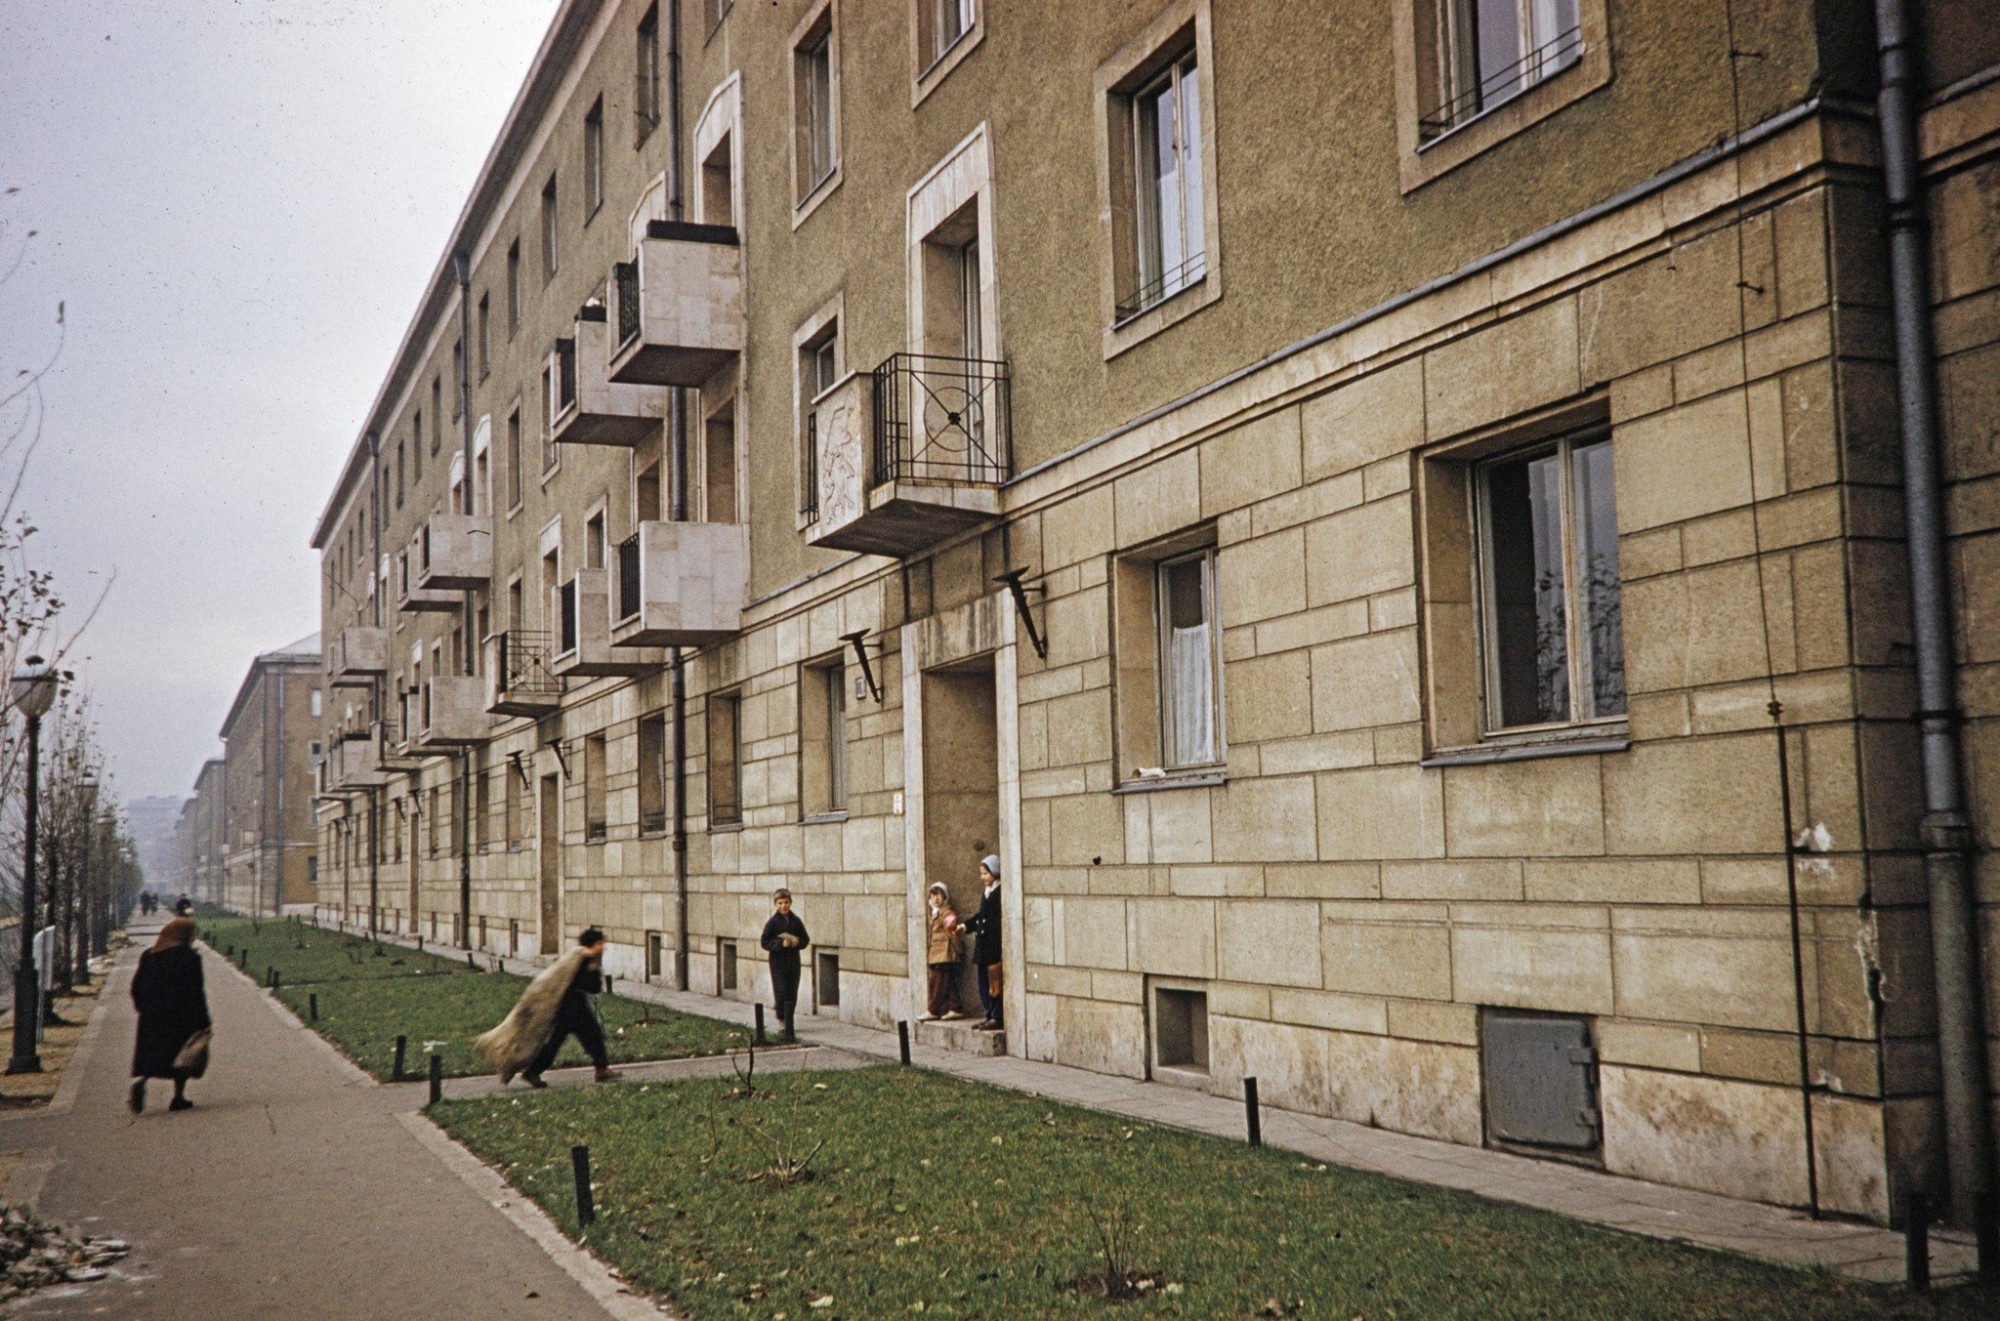 A XIV. kerületi Kerepesi út házsora az Örs vezér tere és a Róna utca között 1960-ban. A legközelebbi kapu feletti erkély homlokzatán a Kakasviadal című dombormű (Dabóczi Mihály, 1956).